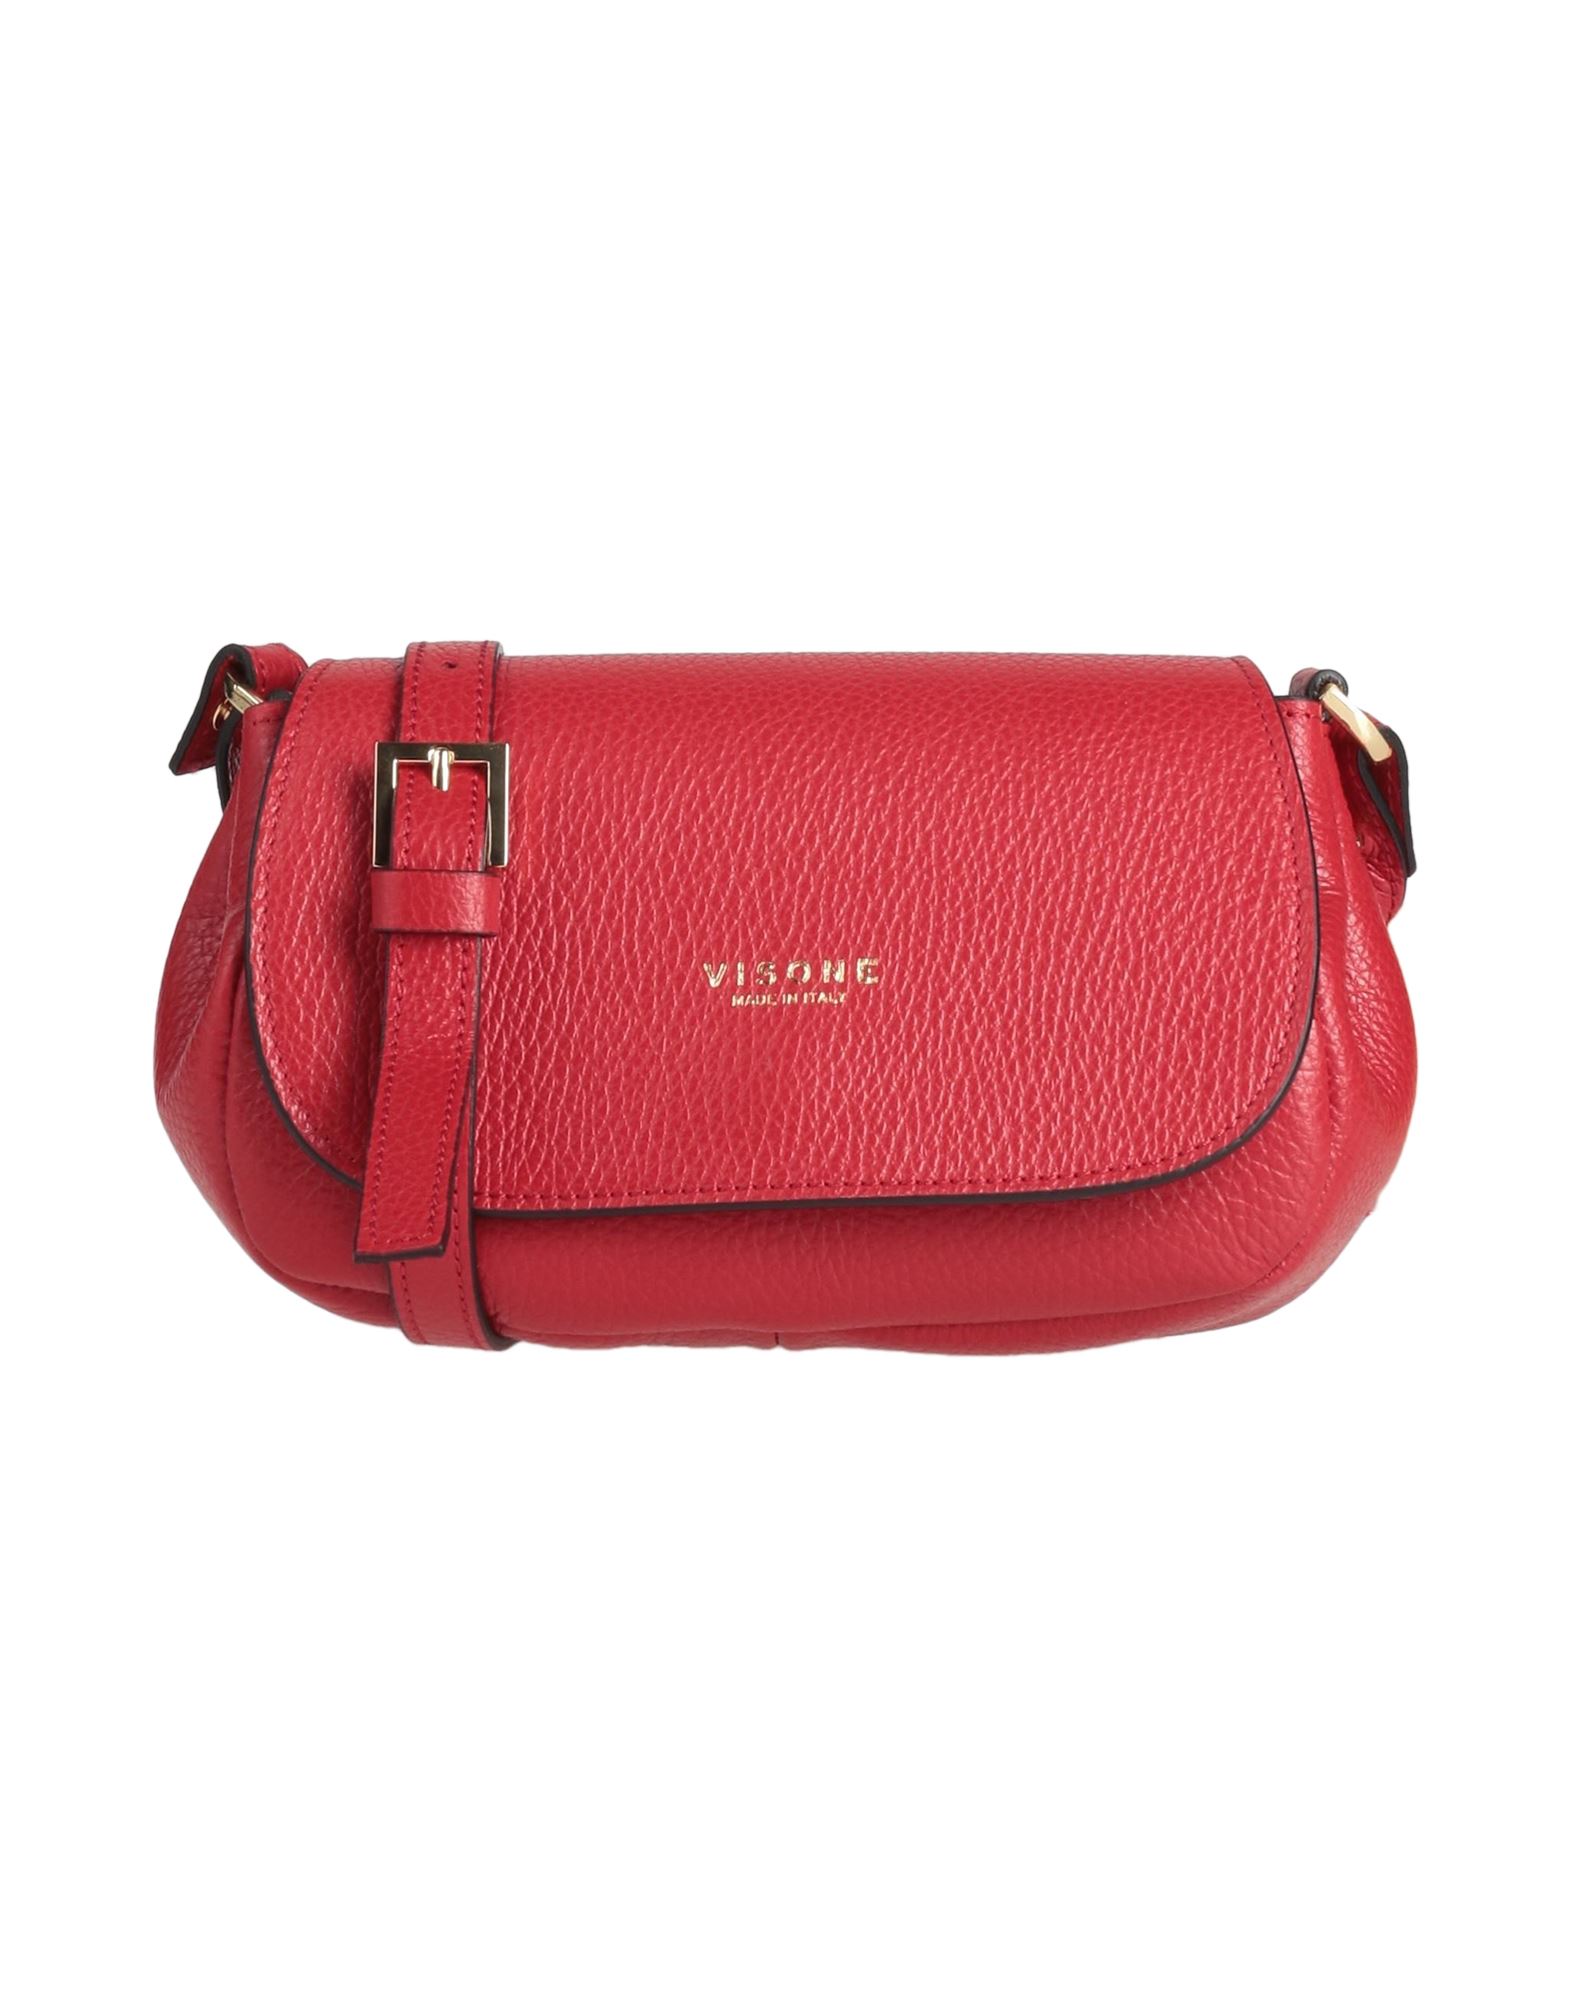 Visone Handbags In Red